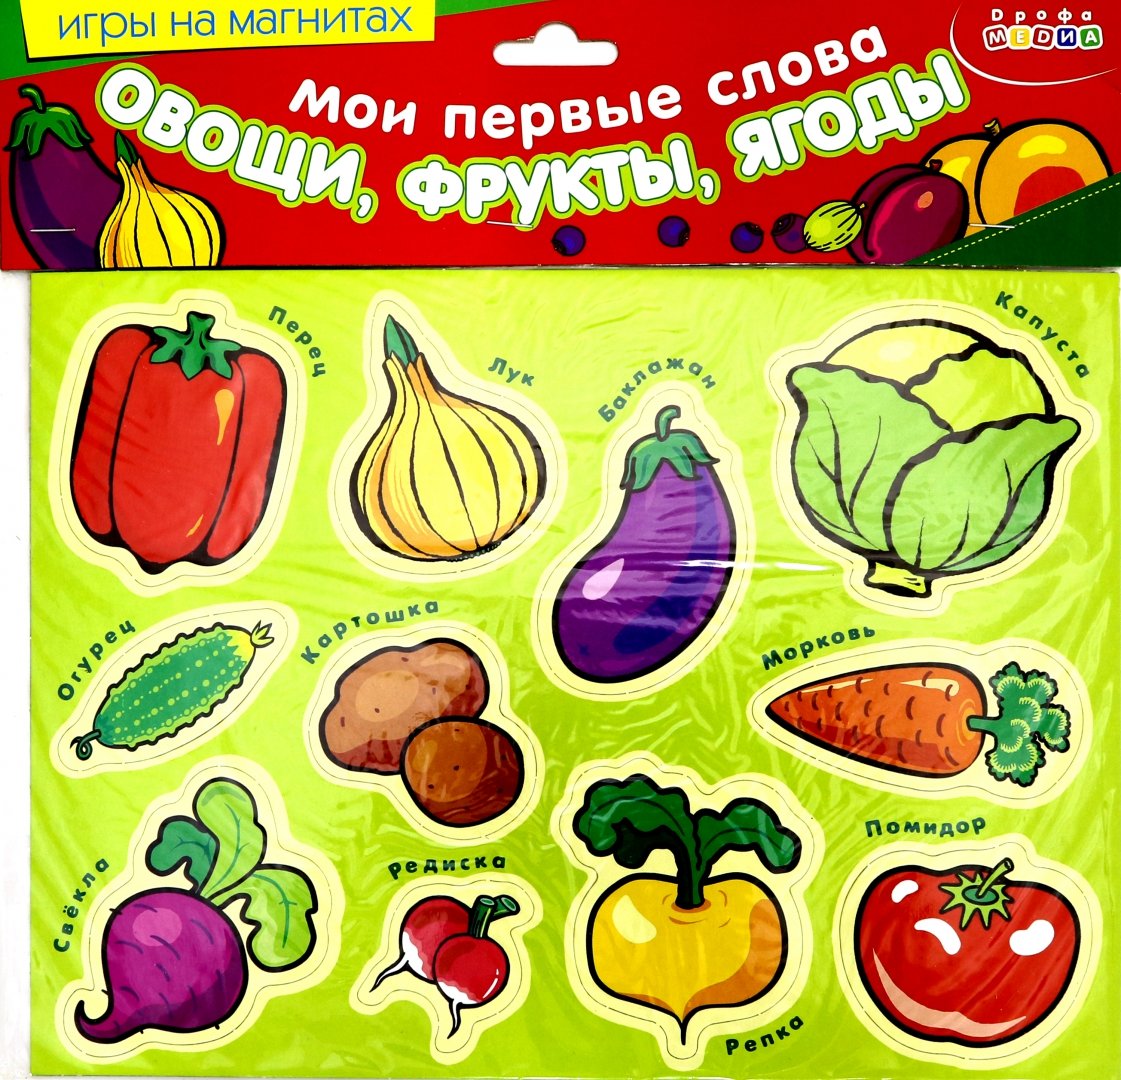 Предложение со словом овощи. Мои первые слова: фрукты. Ягоды. Овощи фрукты картинки для детей дошкольного возраста. Настольная игра Дрофа-Медиа фрукты и ягоды. Овощ или фрукт на букву з.